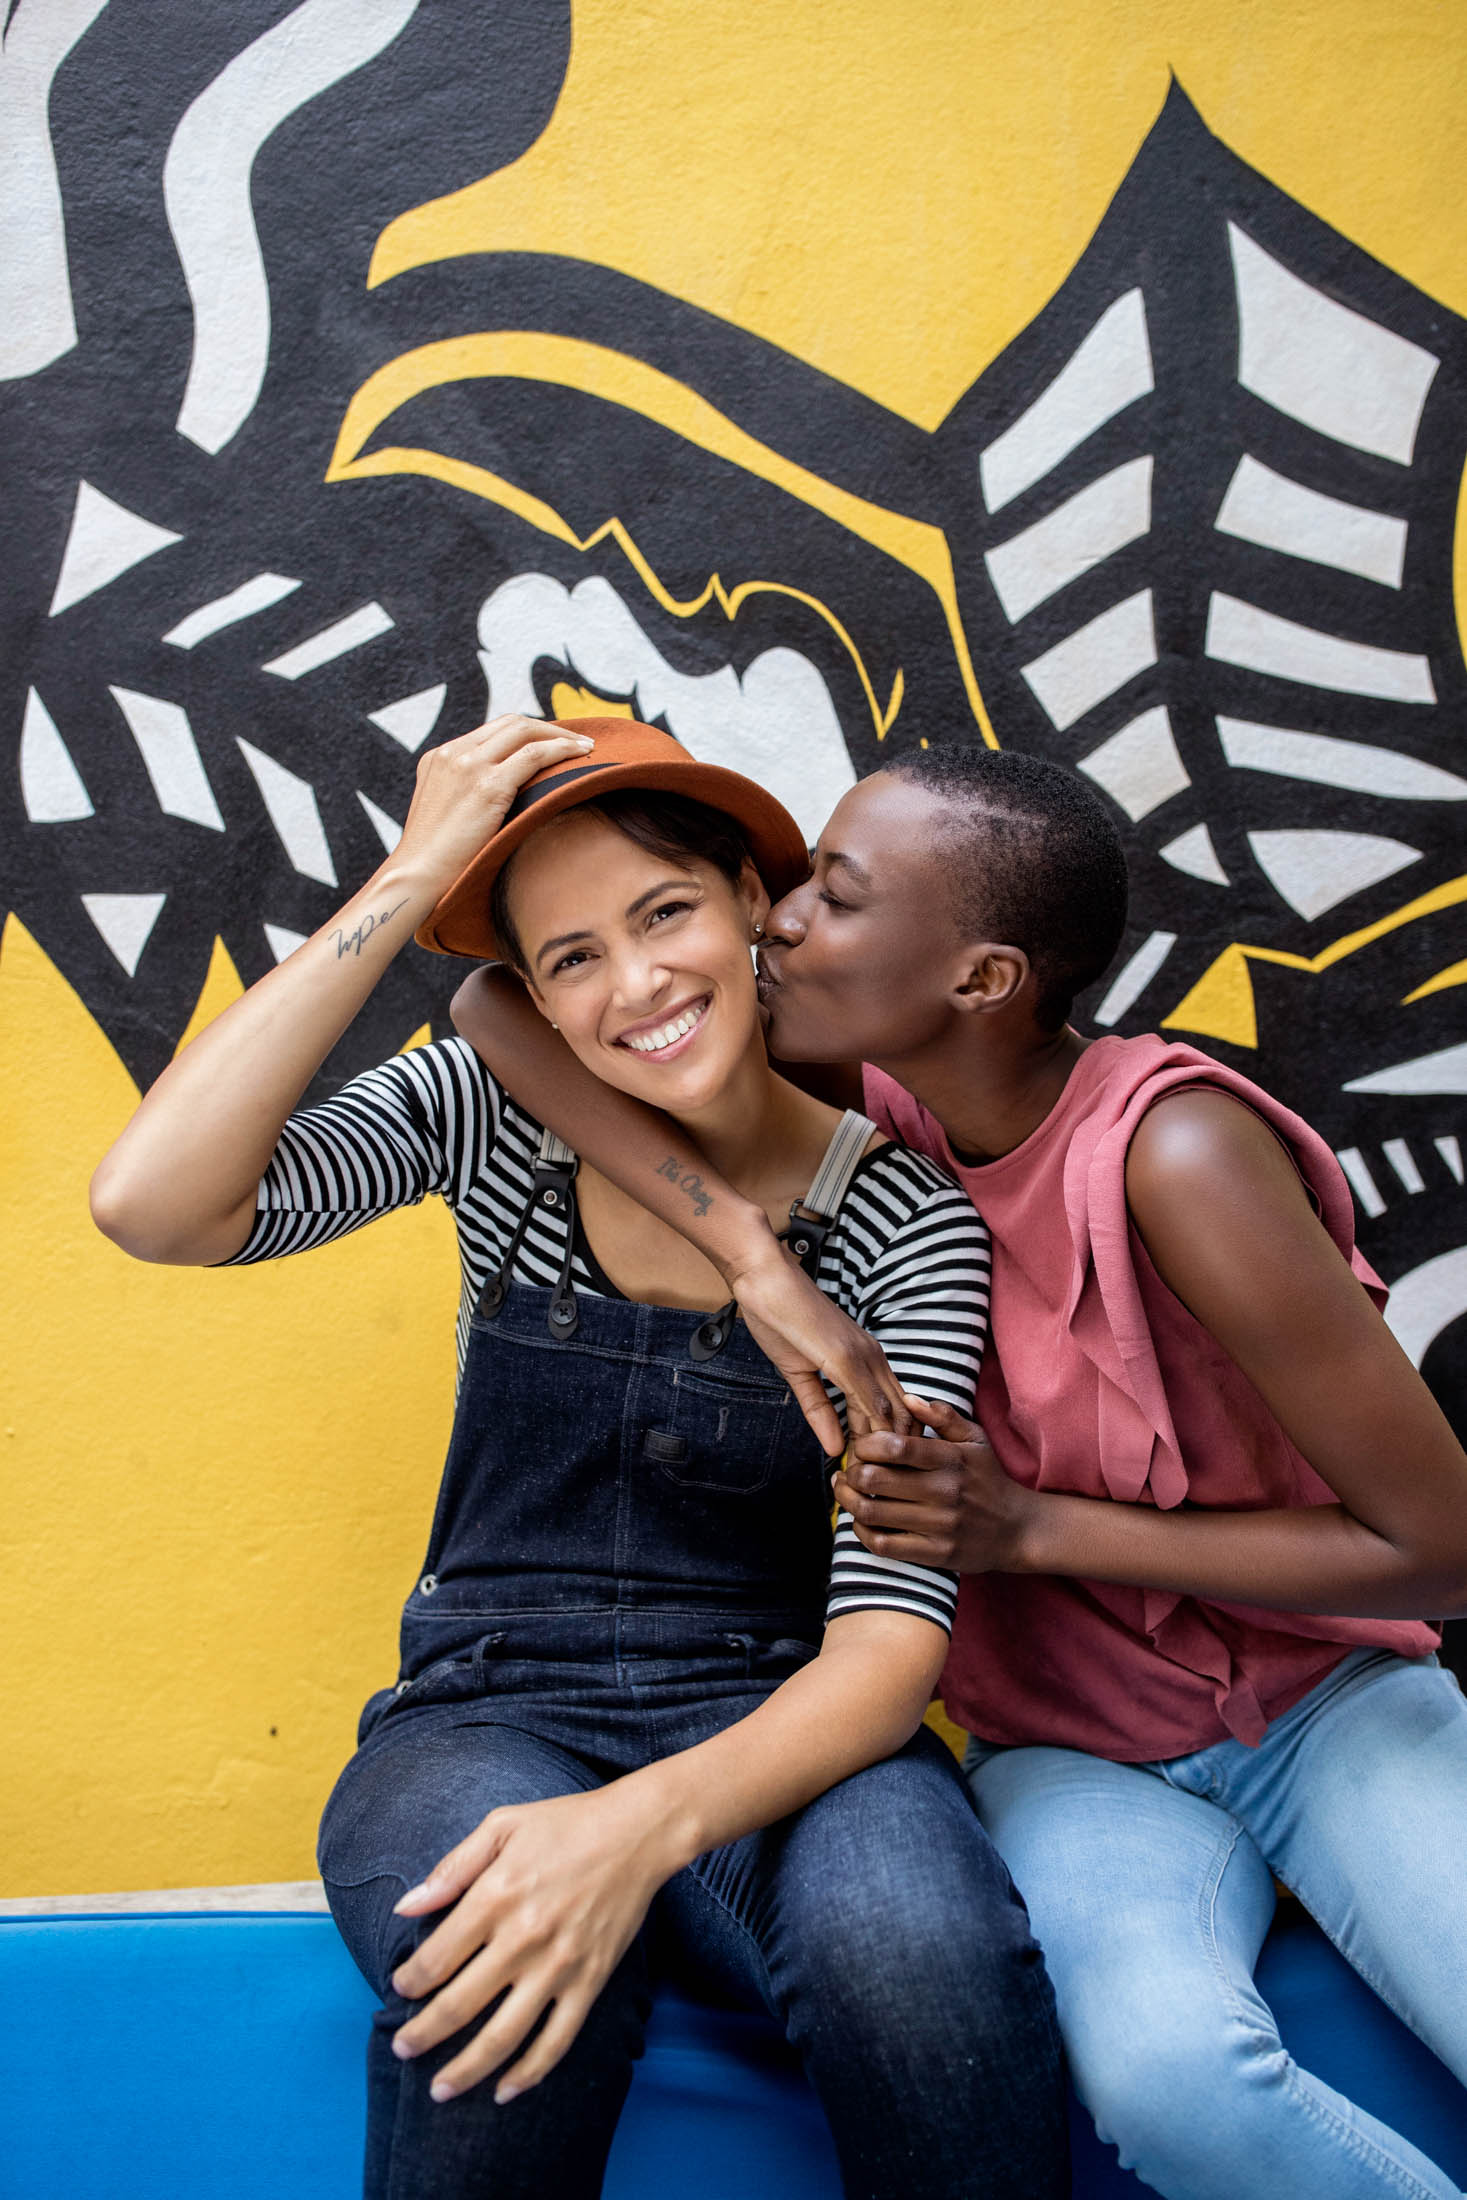 Zwei Frauen, die eine küsst die andere auf die Wange, sitzen vor einem farbenfrohen Wandgemälde. Die Frau im Overall lächelt, während sie eine Mütze zurechtrückt. Die Atmosphäre ist fröhlich und herzlich. © Fotografie Tomas Rodriguez